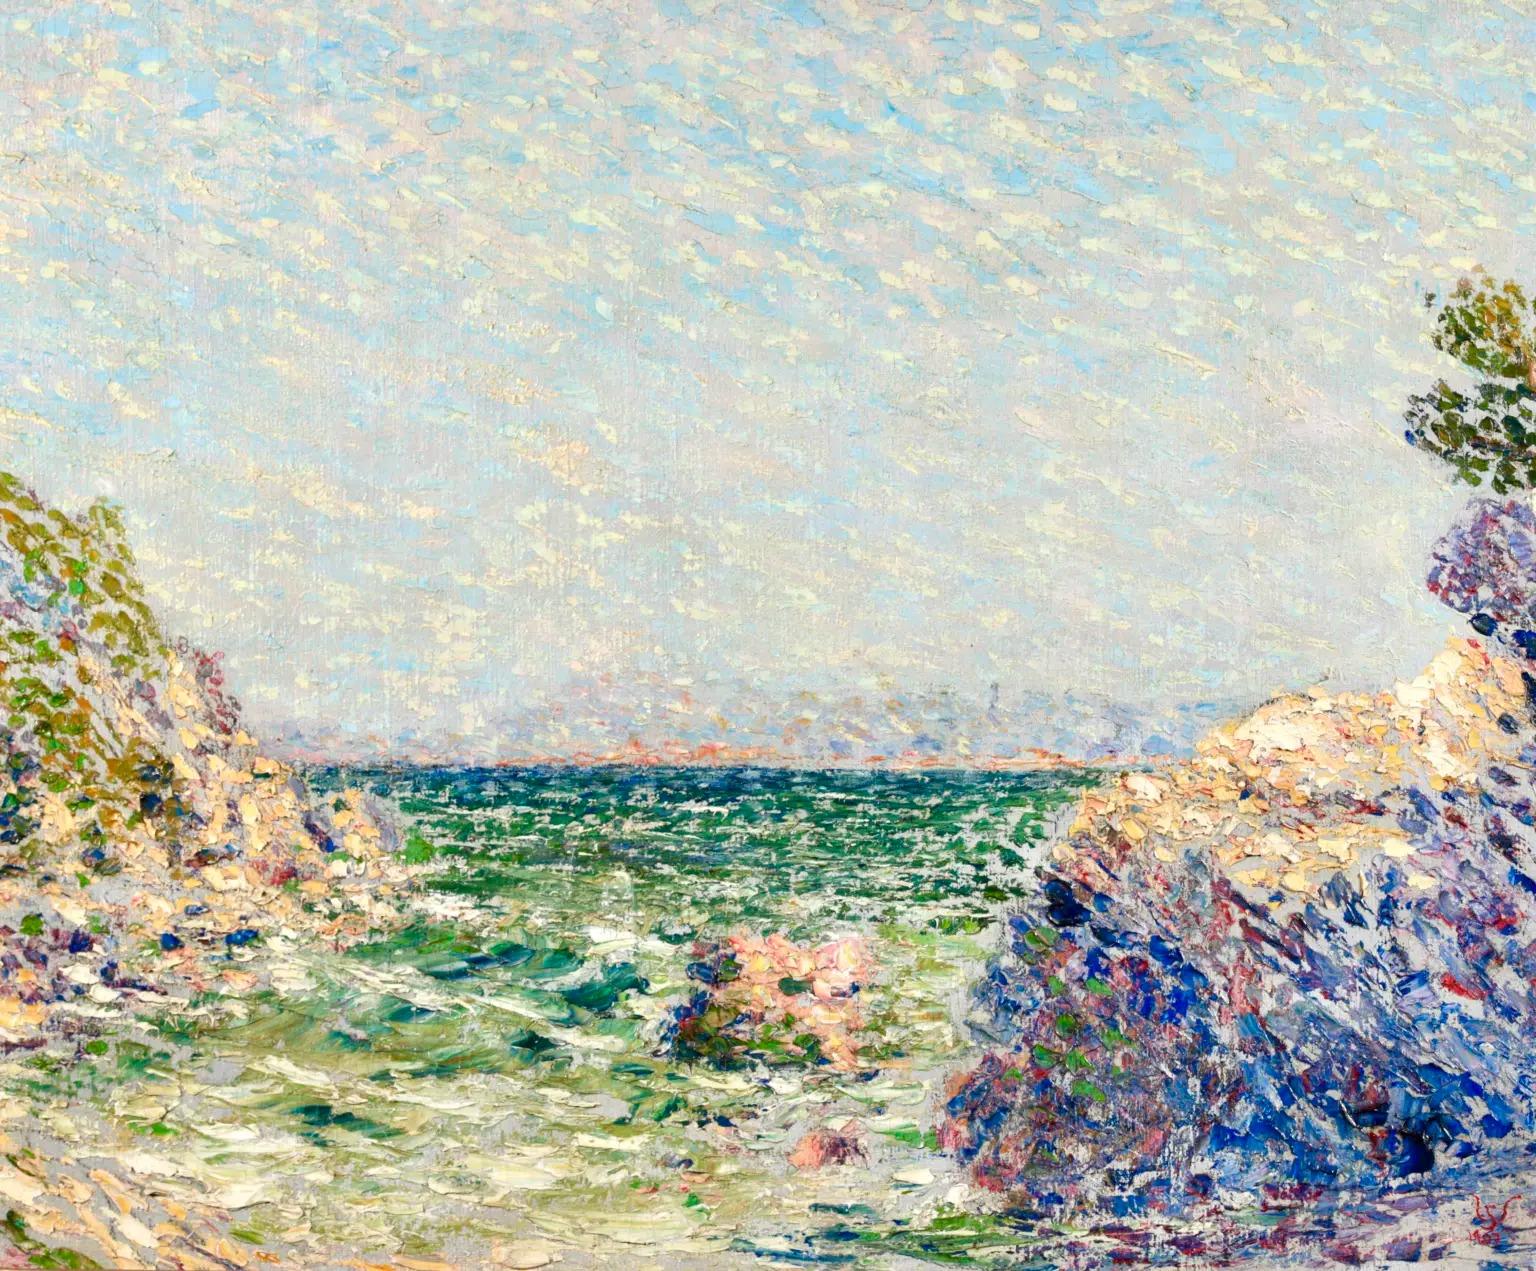 Huile sur toile signée et datée du peintre impressionniste belge Willy Schlobach. L'œuvre représente une vue de la côte, avec un regard sur la mer vert foncé qui rejoint le ciel bleu poudre à l'horizon lointain, et des formations rocheuses de part